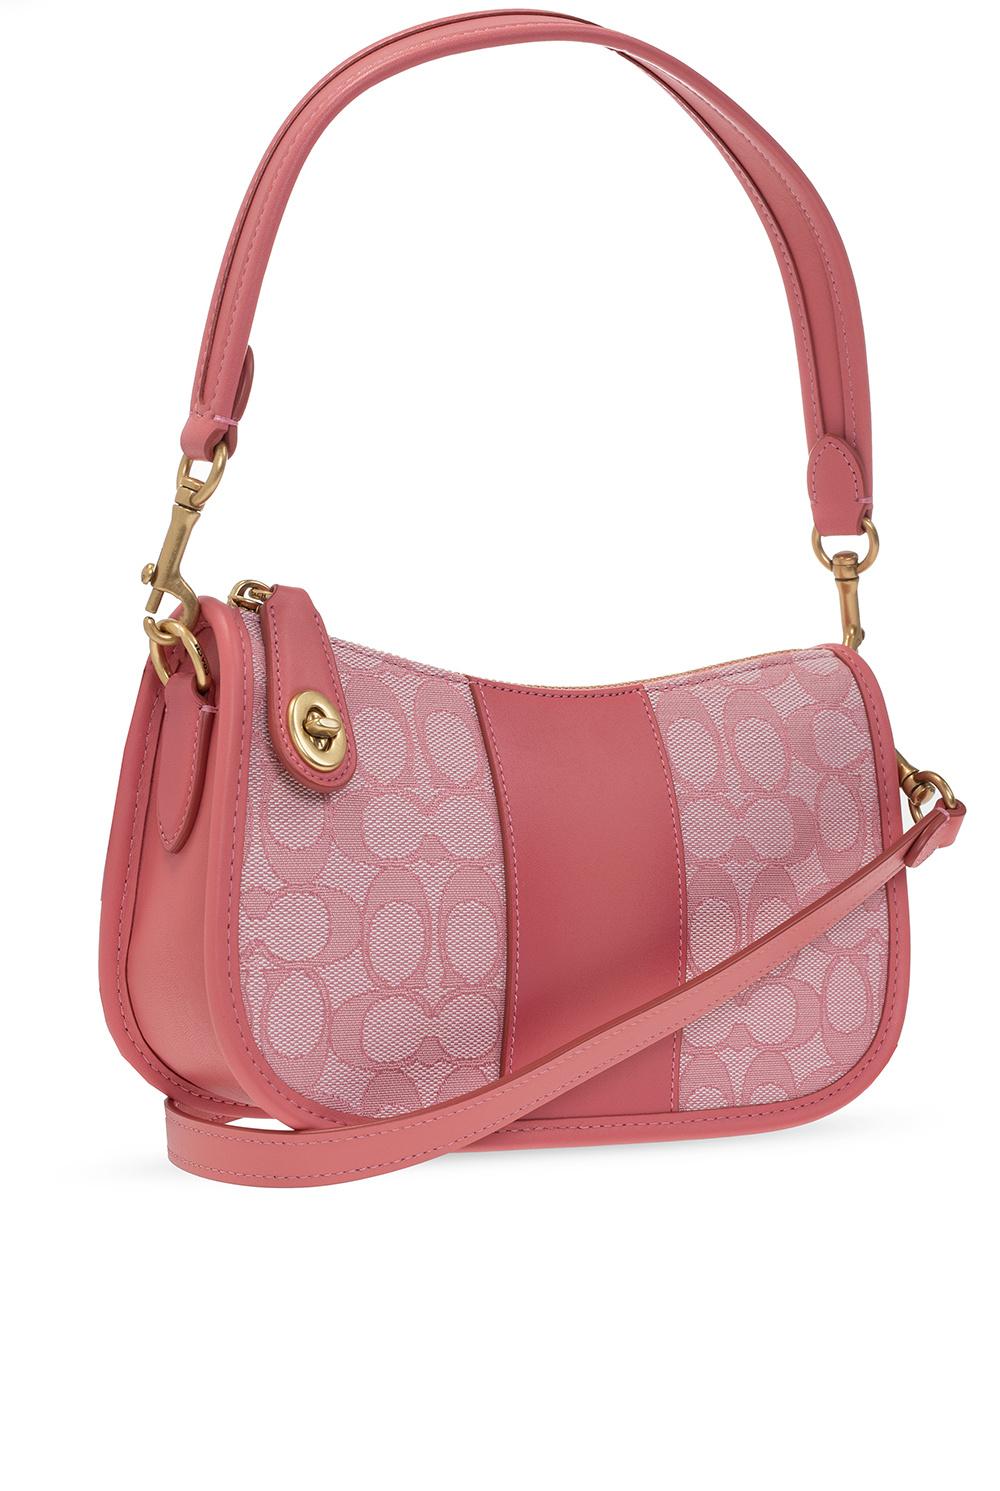 COACH 'swinger' Shoulder Bag Pink